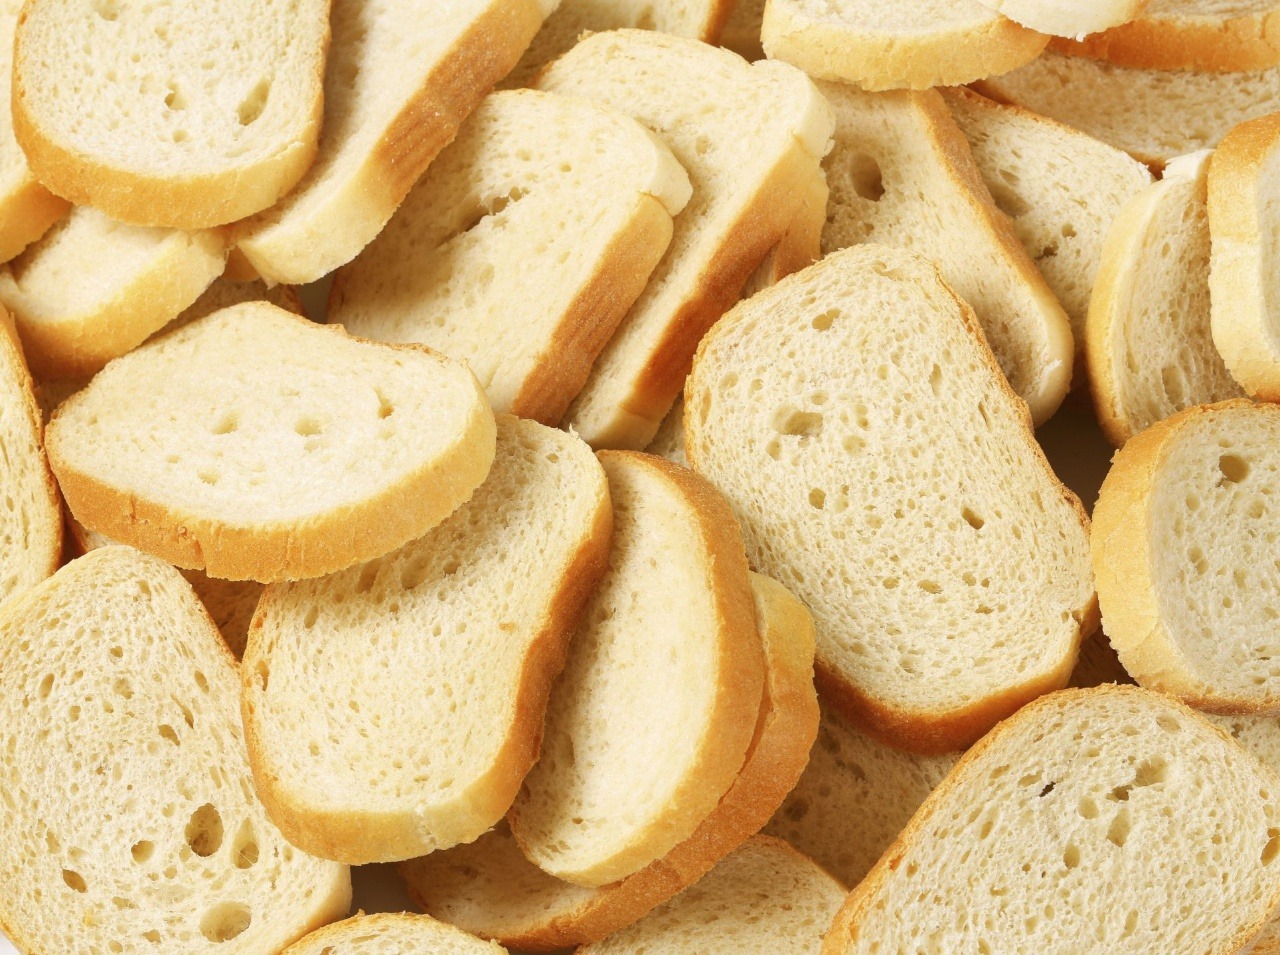 Biely chlieb nie je až taký škodlivý, ako si mnohí o ňom myslia!